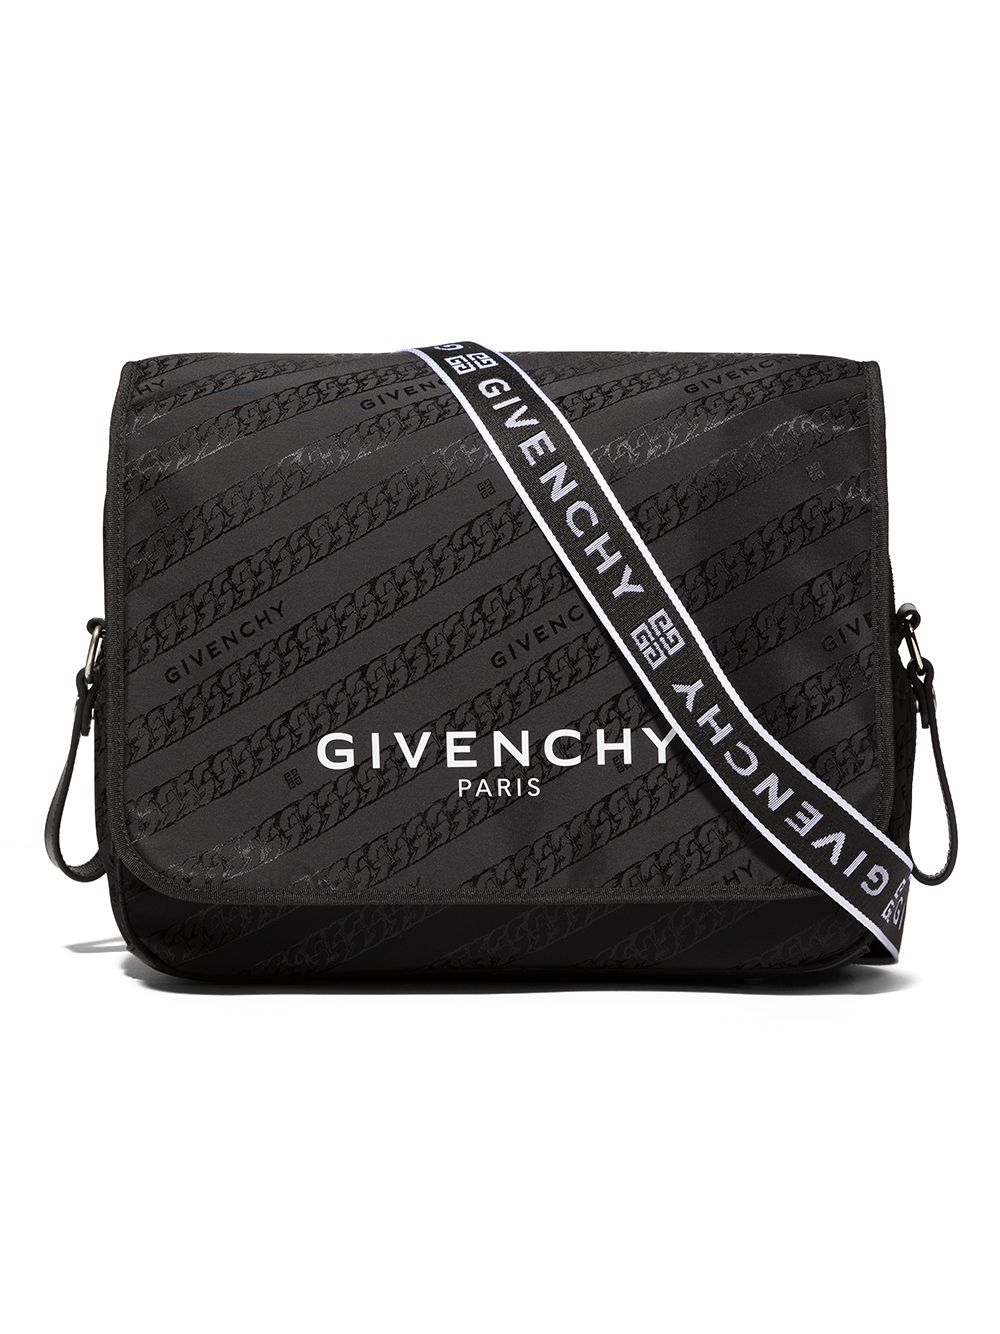 фото Givenchy kids пеленальная сумка chain